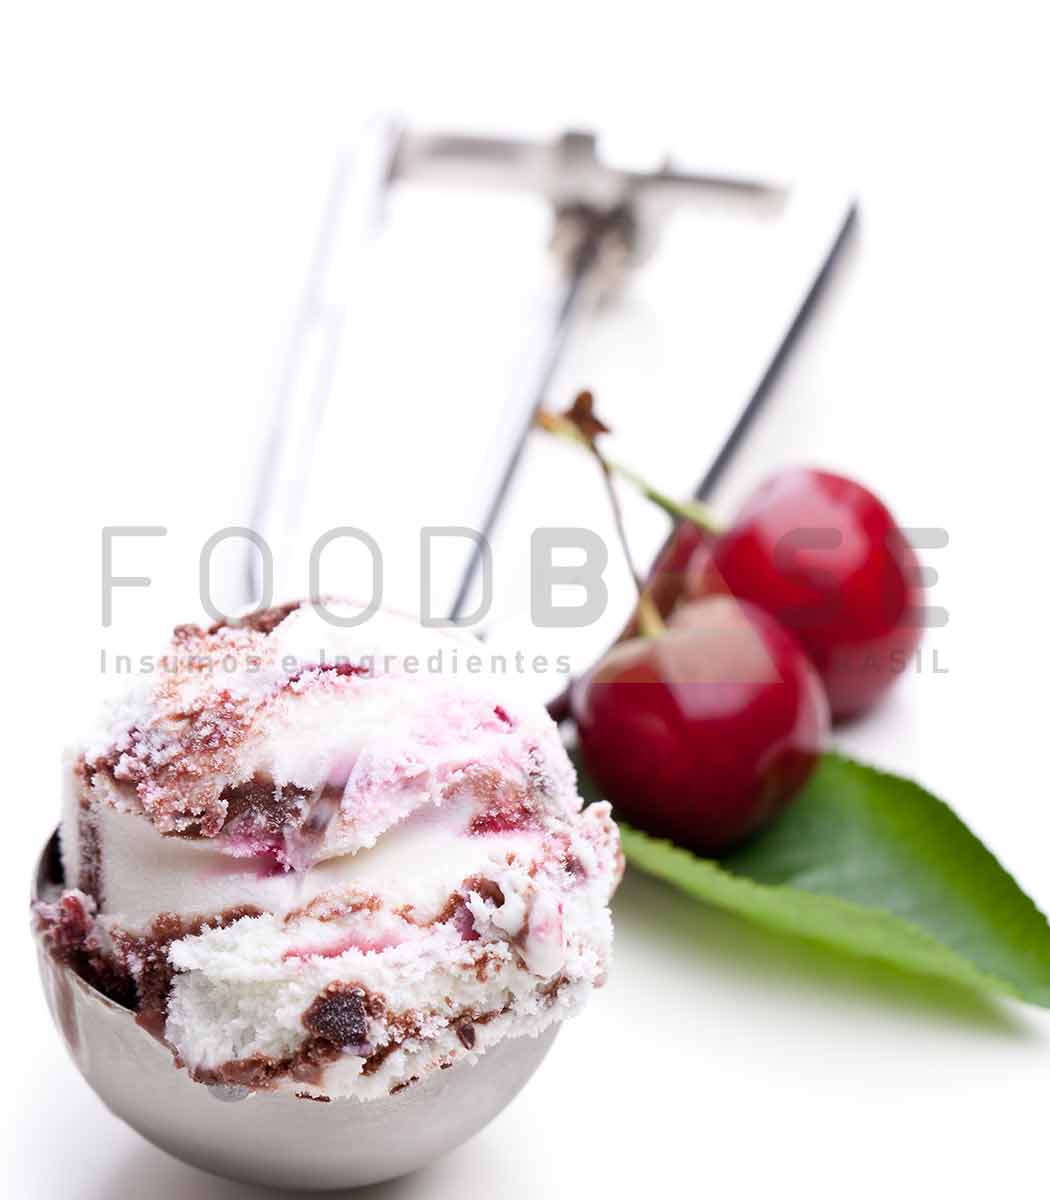 Receita para sorveterias: Sorvete de Yogurt italiano com Amarena